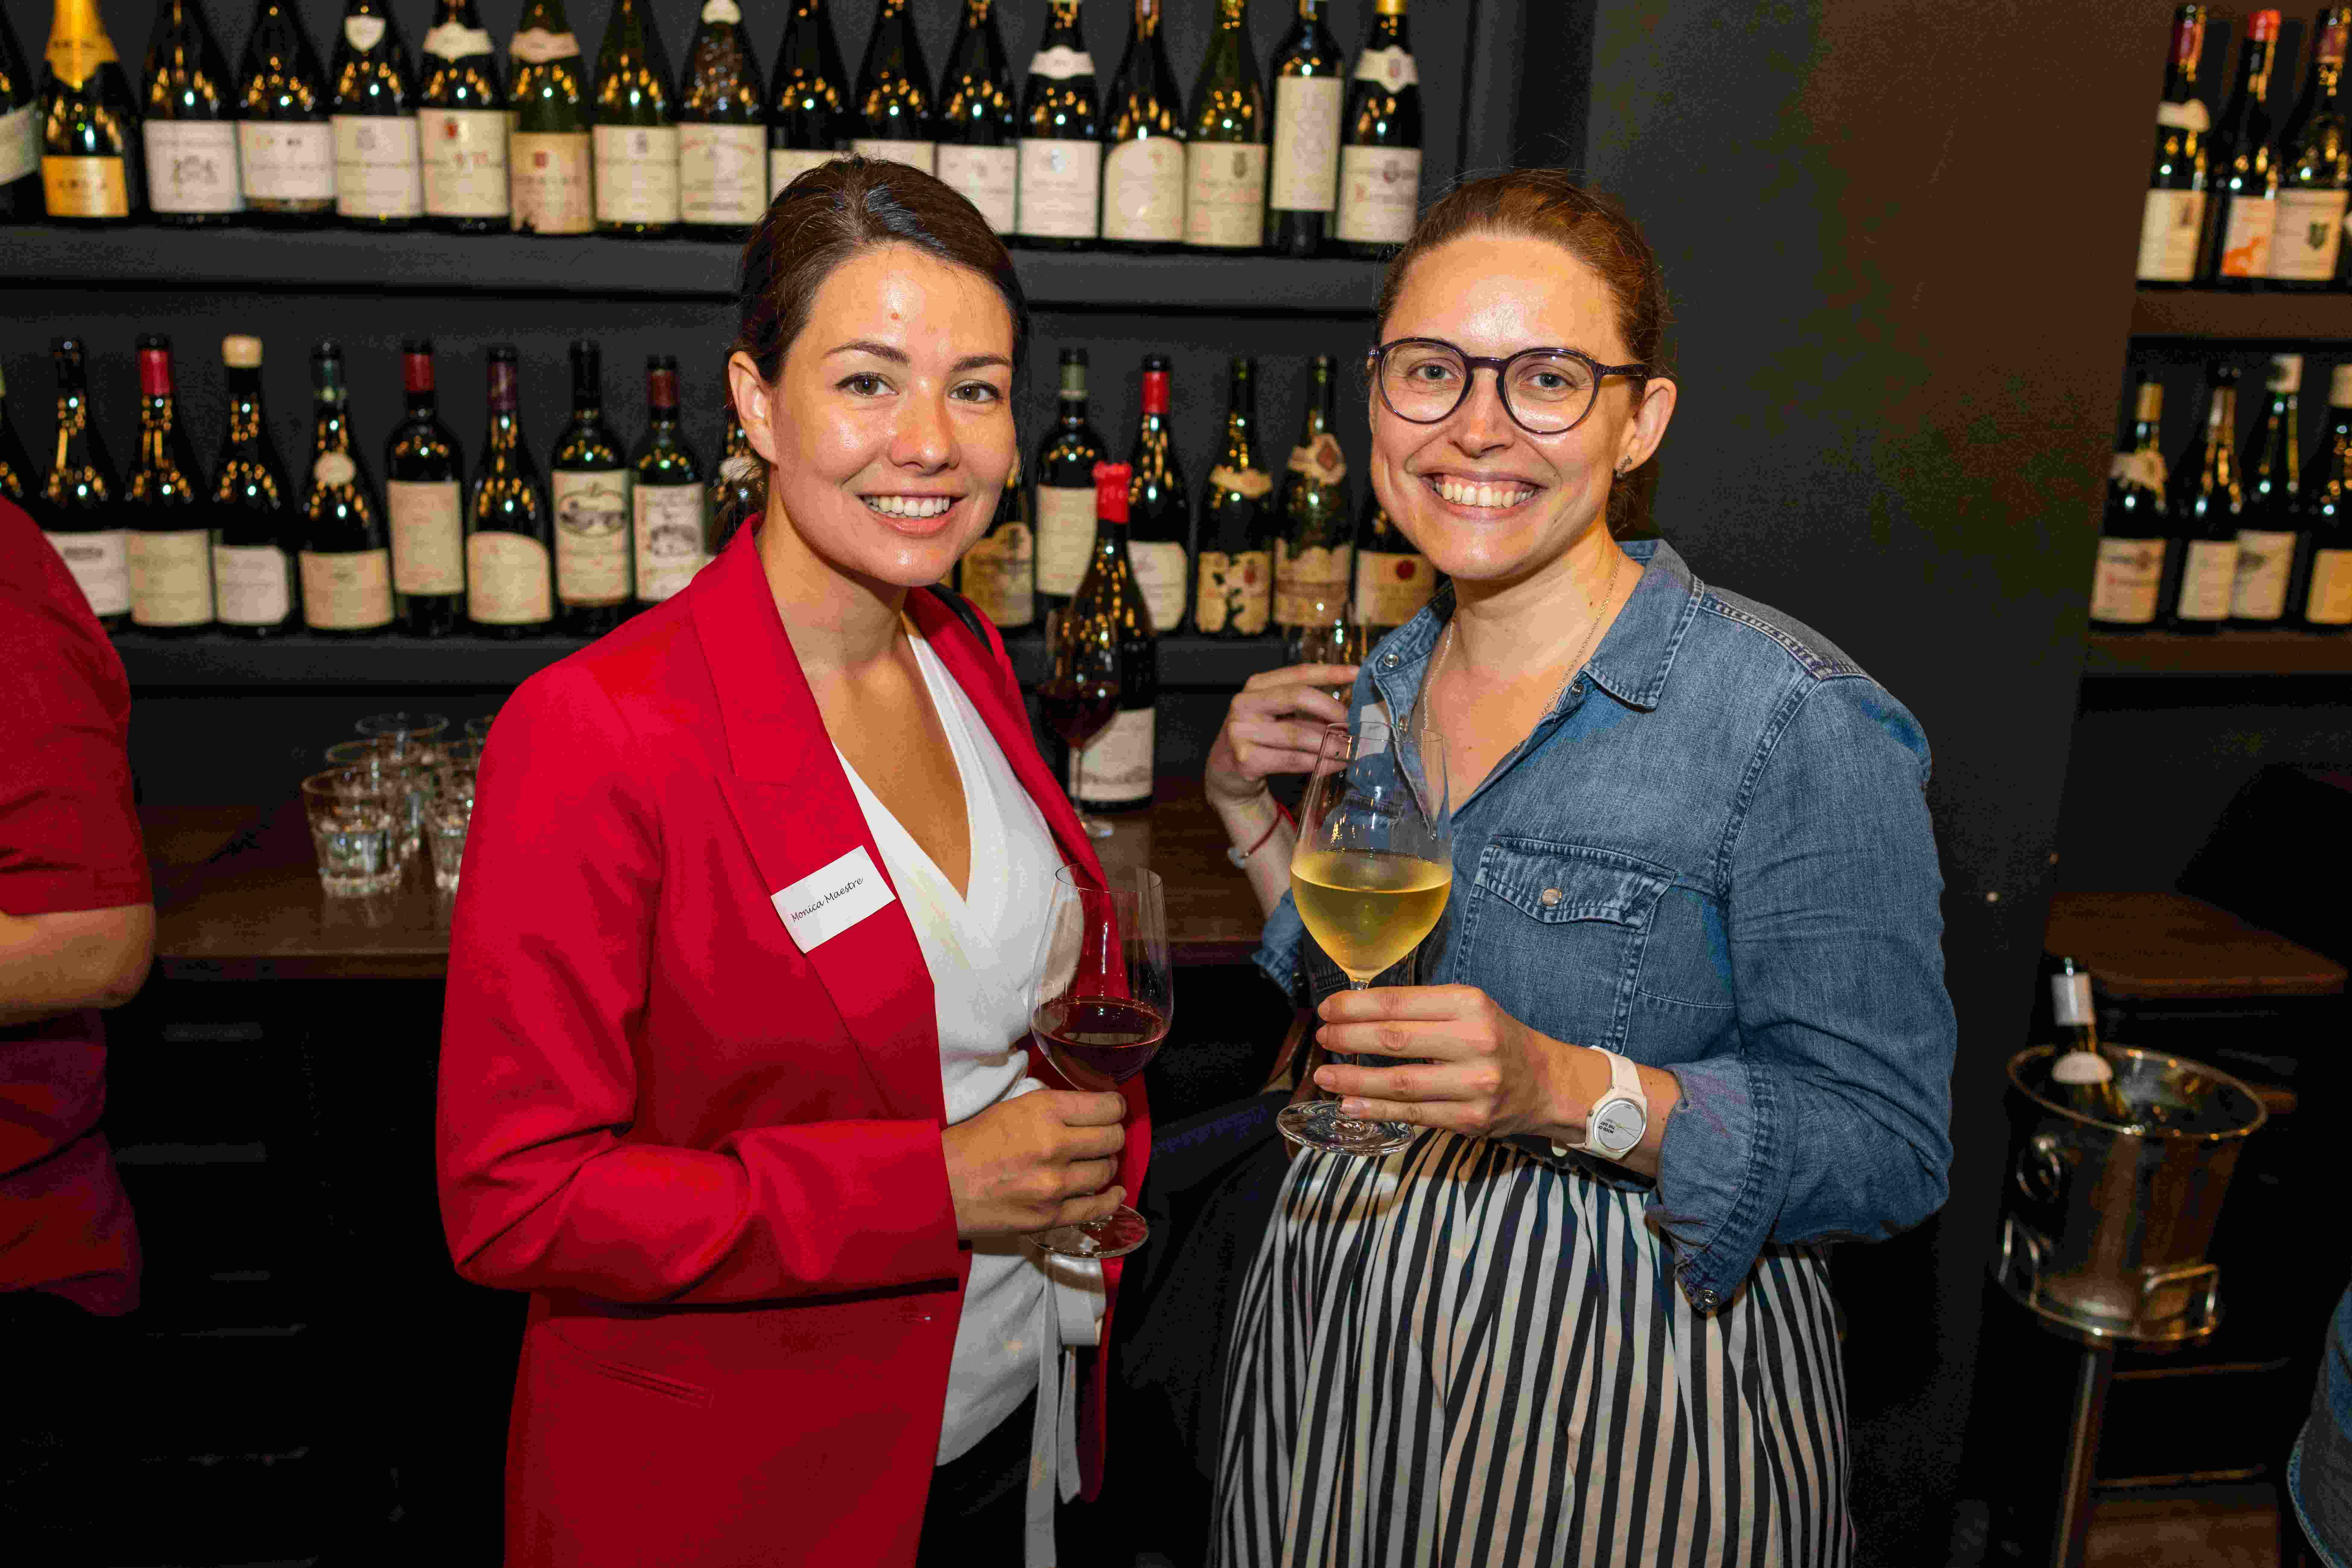 2 women in wine bar